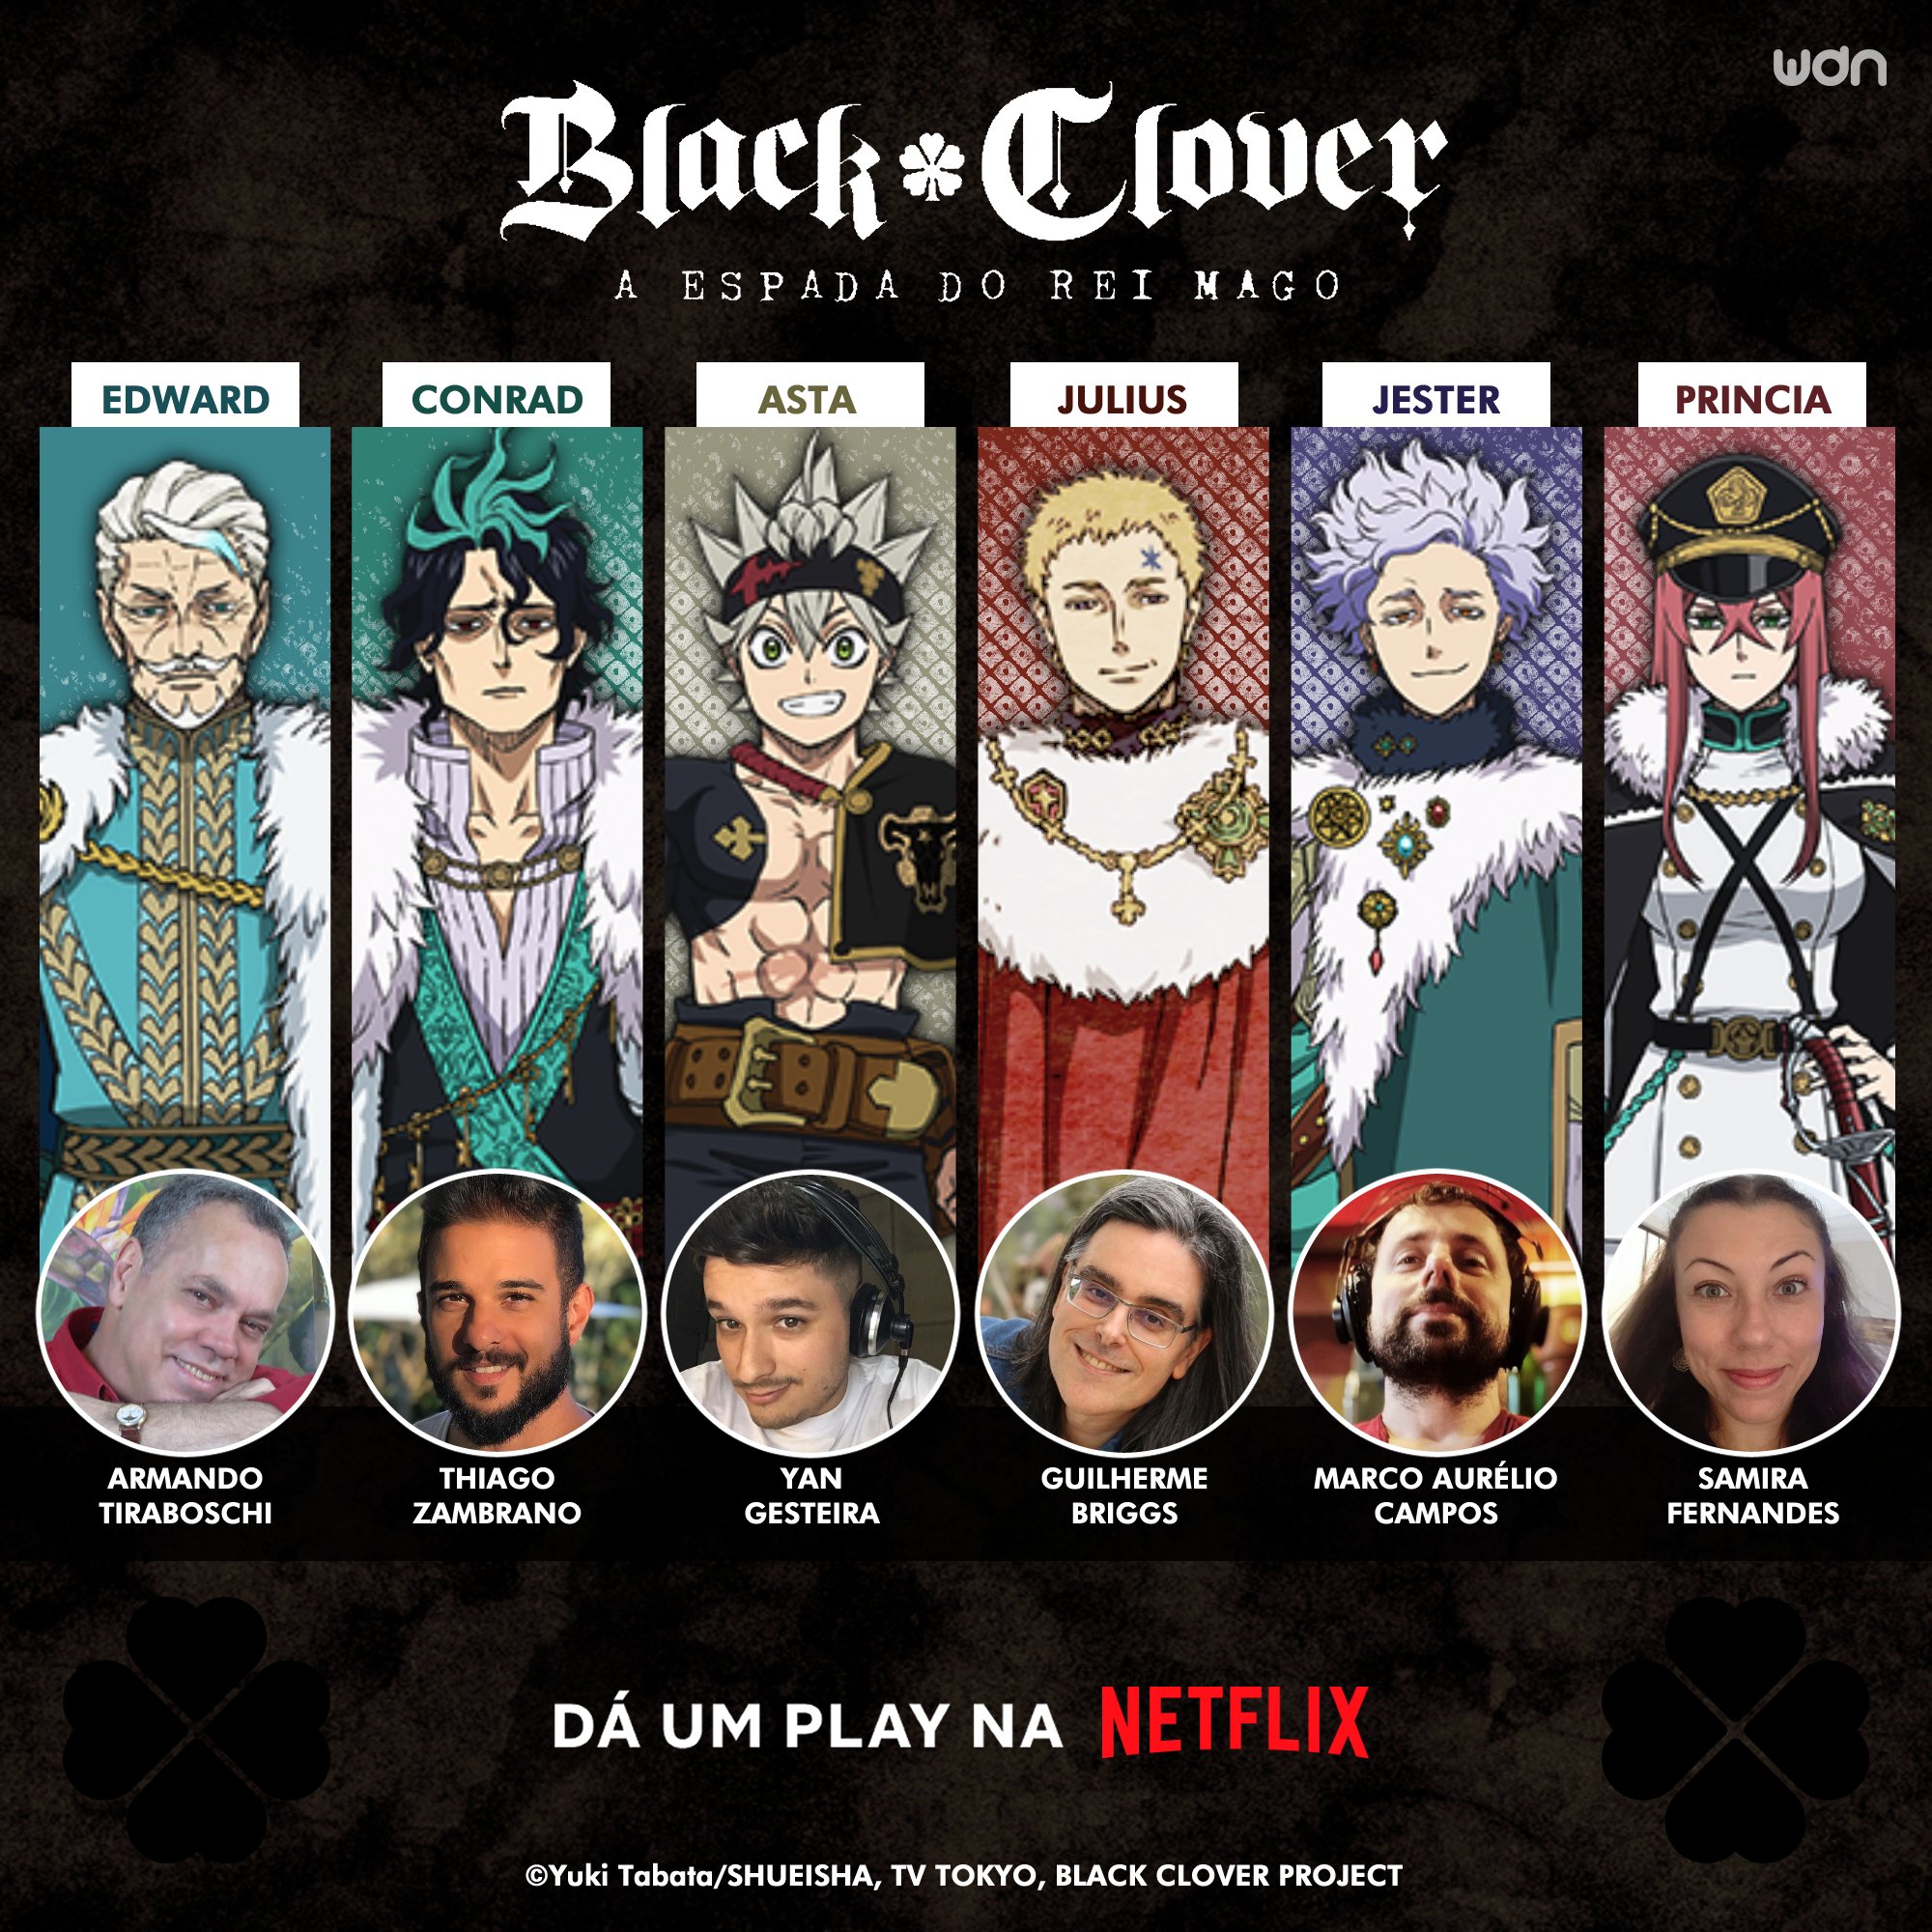 A Espada do Rei Mago, conheça o novo filme de Black Clover!